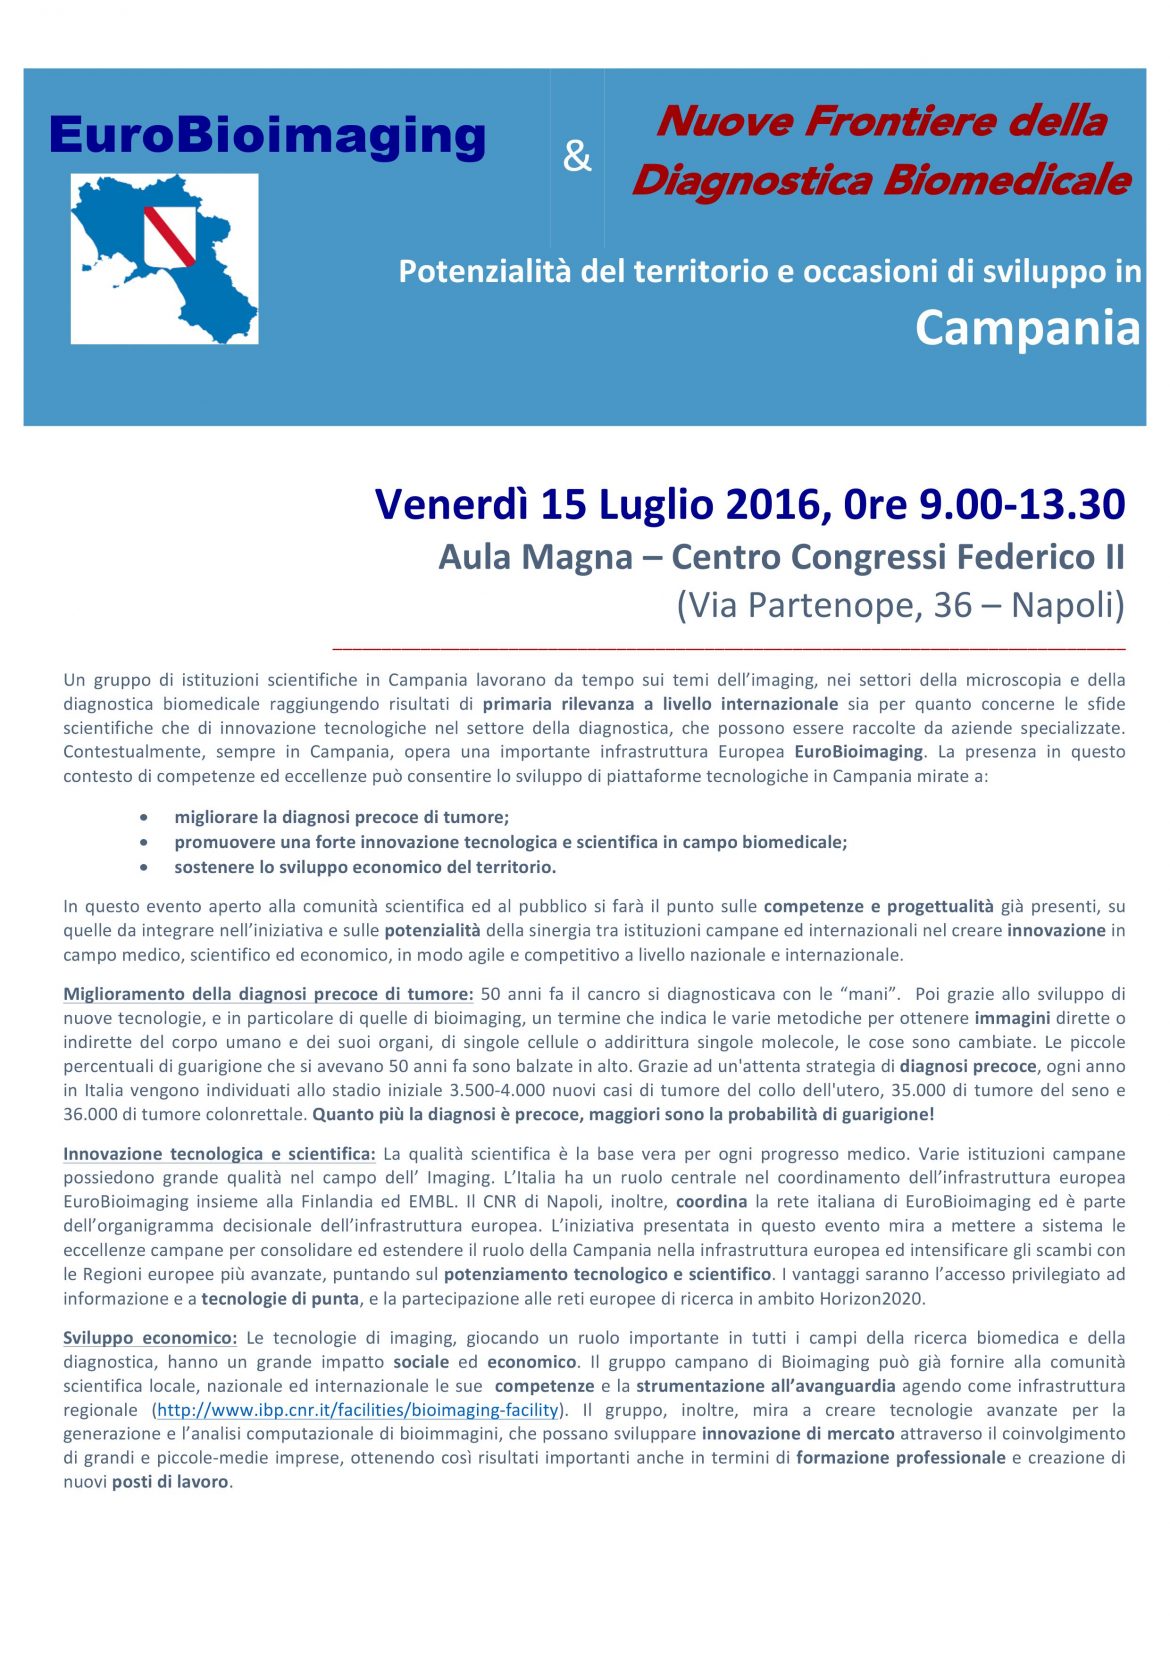 EuroBioimaging & Nuove frontiere della diagnostica biomedicale: potenzialità del territorio e occasioni di sviluppo in Campania